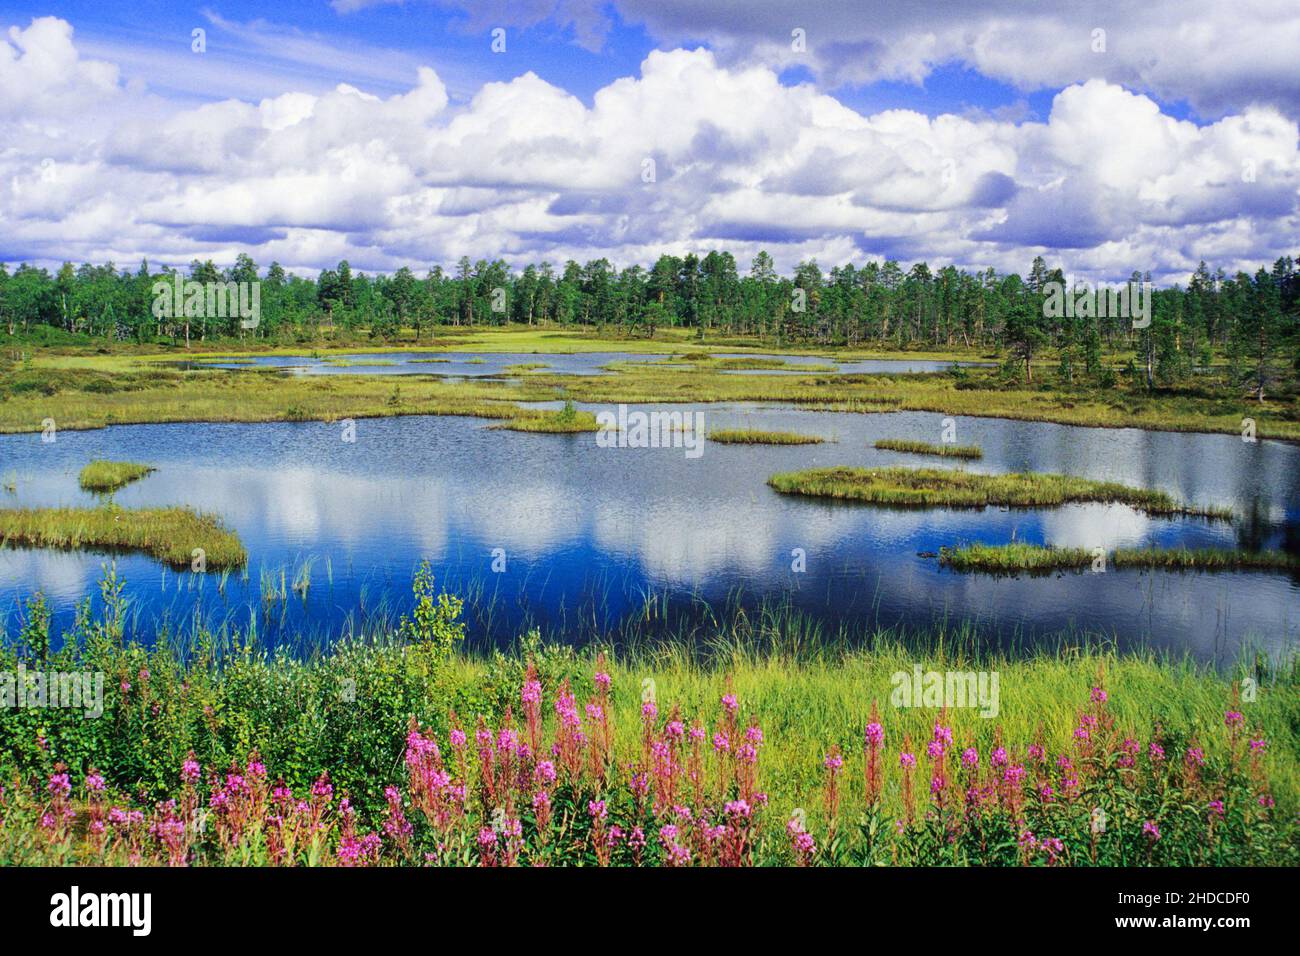 Finnland - typische Seenlandschaft Stock Photo